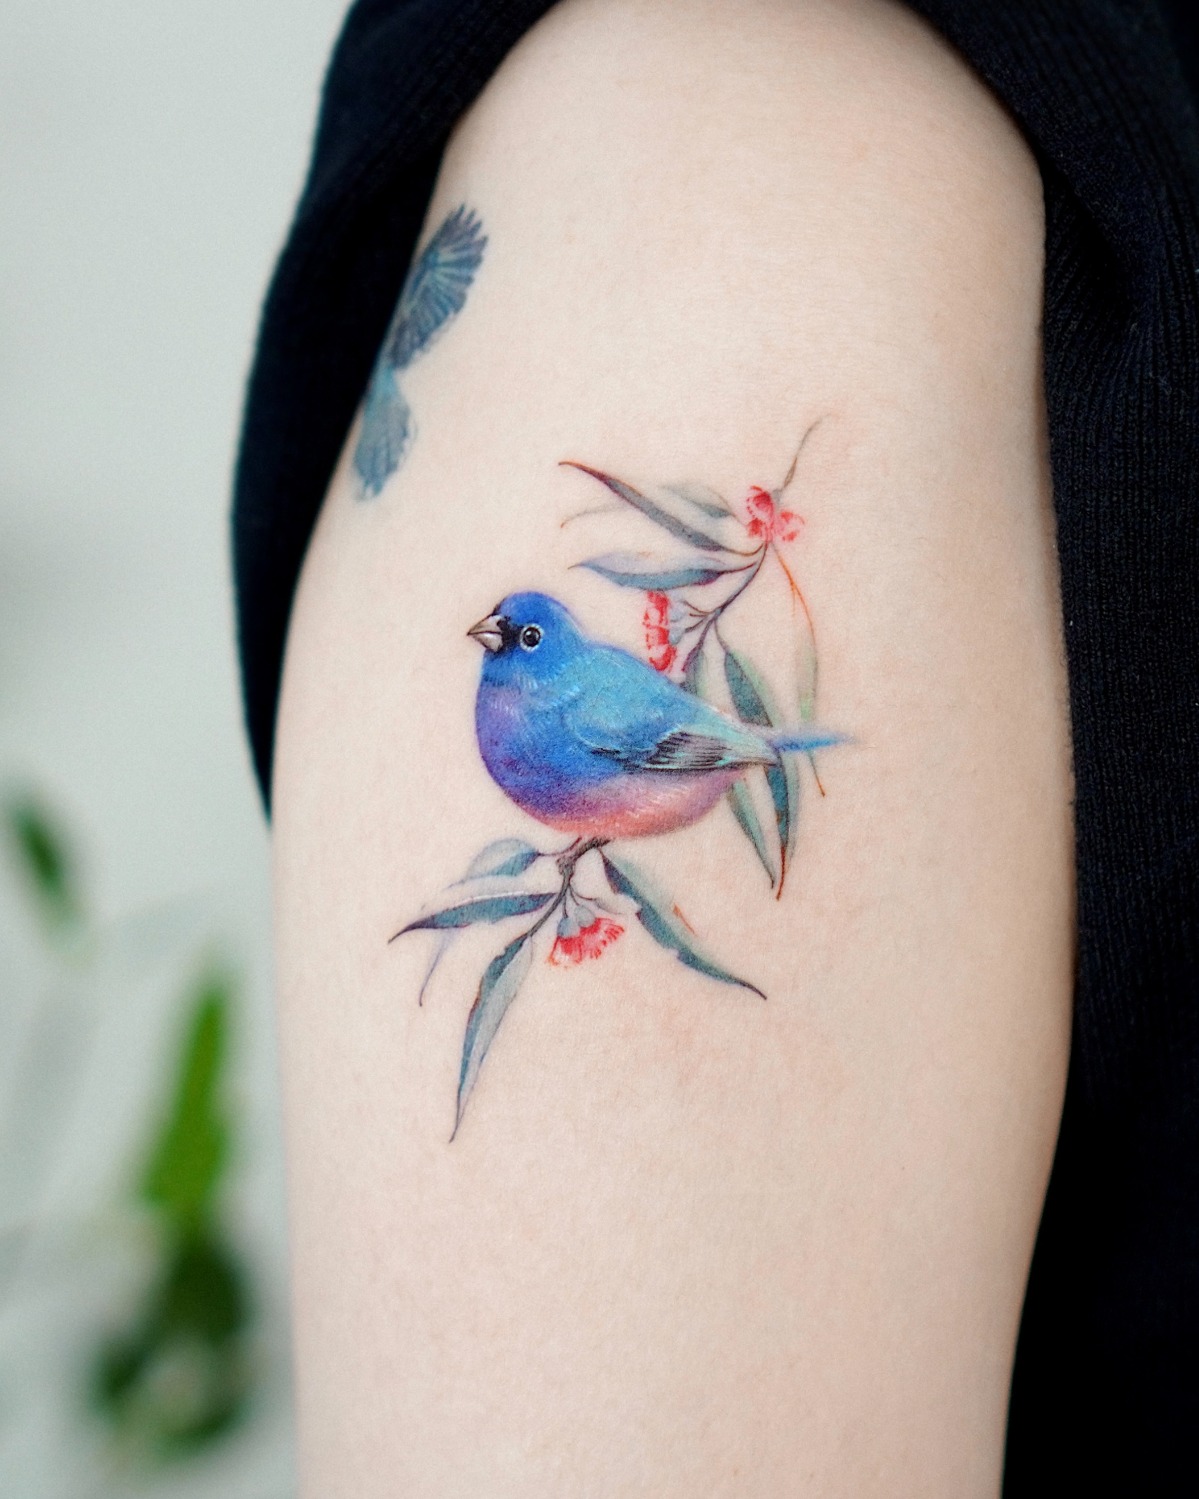 Tattoo artist Abii tattoo | Bucheon, South Korea | iNKPPL